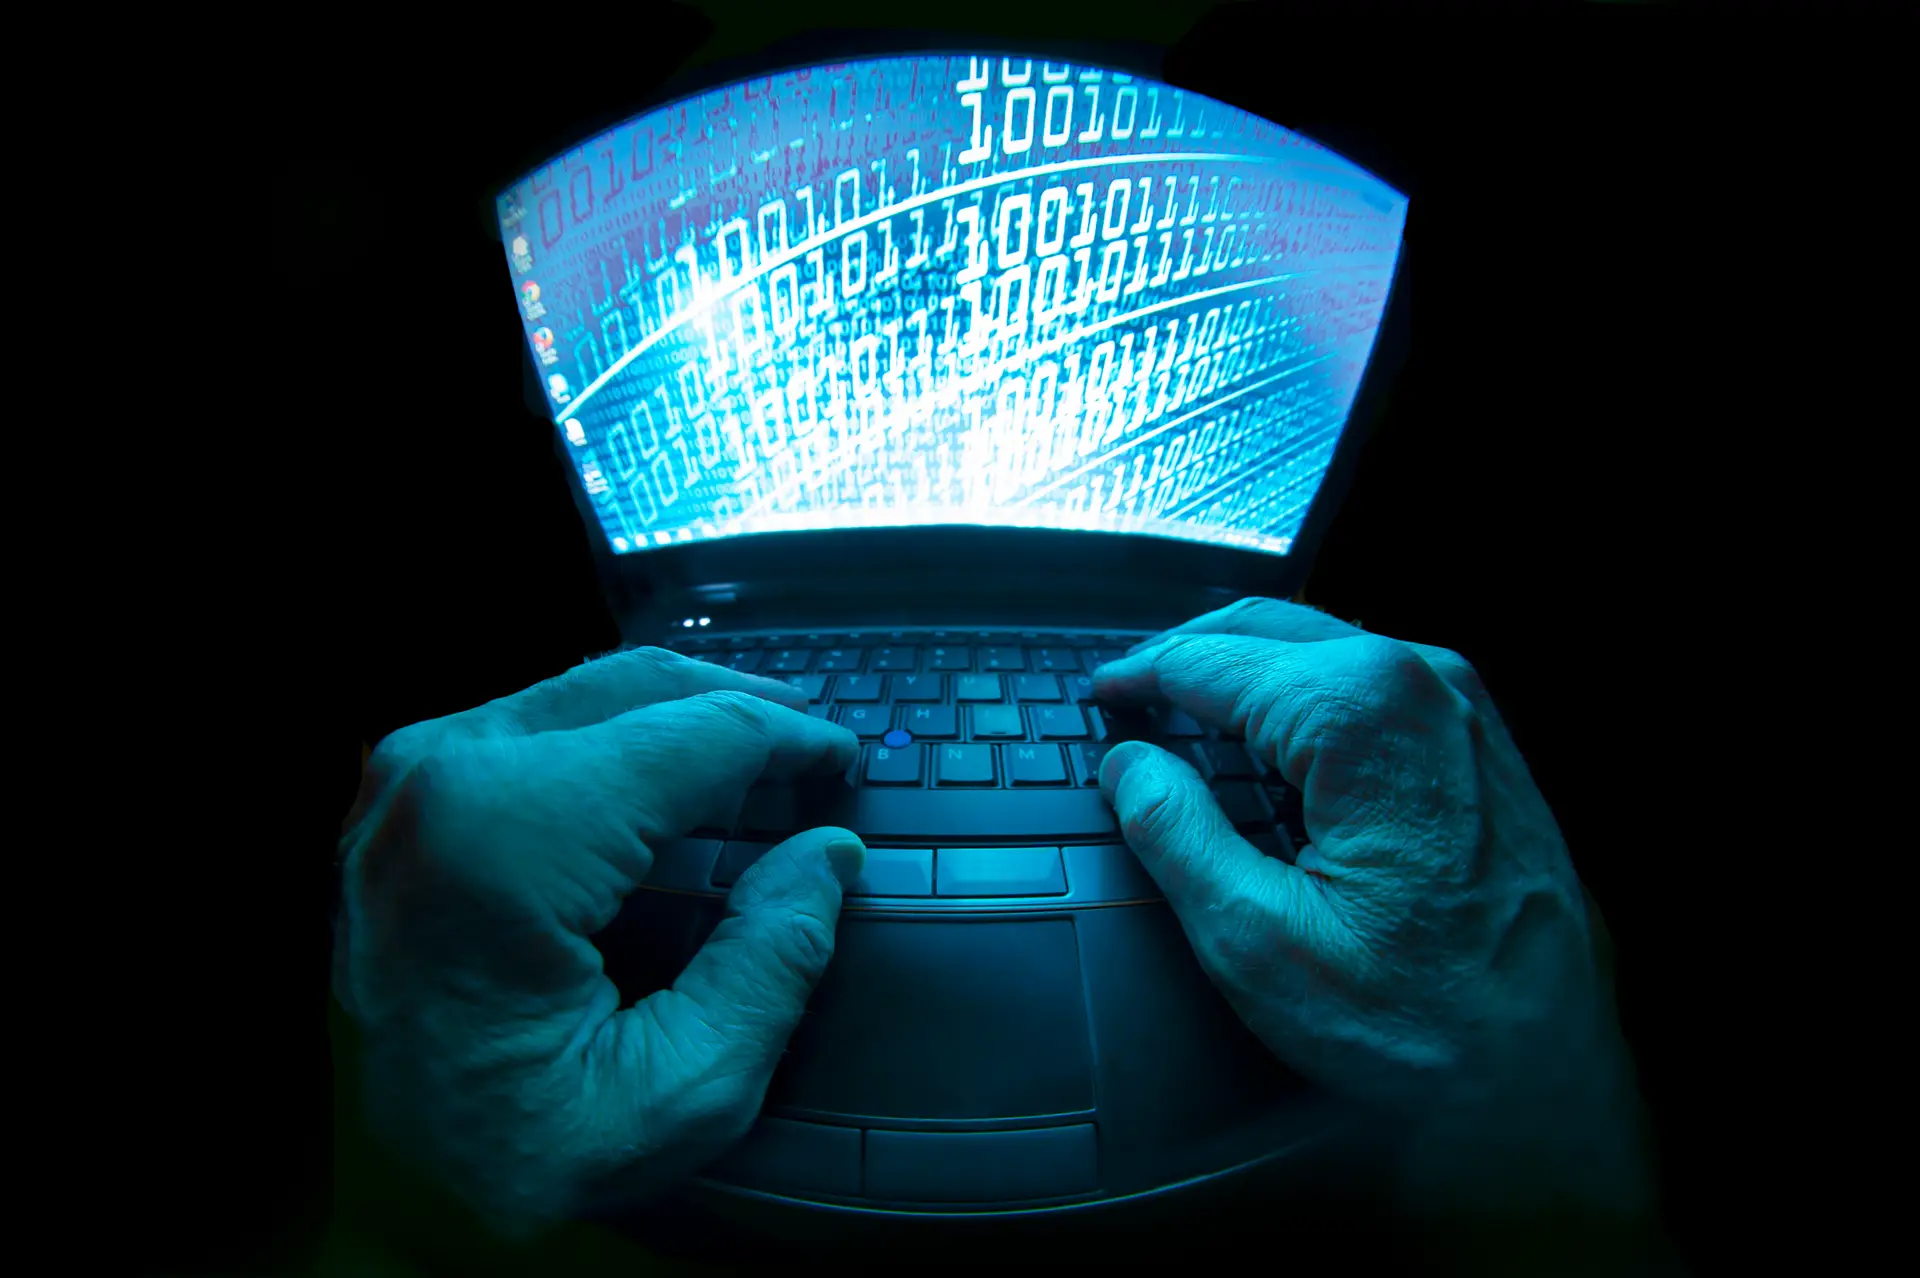 Sistemas obsoletos e funcionários pouco qualificados: como a Comissão de Proteção de Dados vê a cibersegurança do Estado